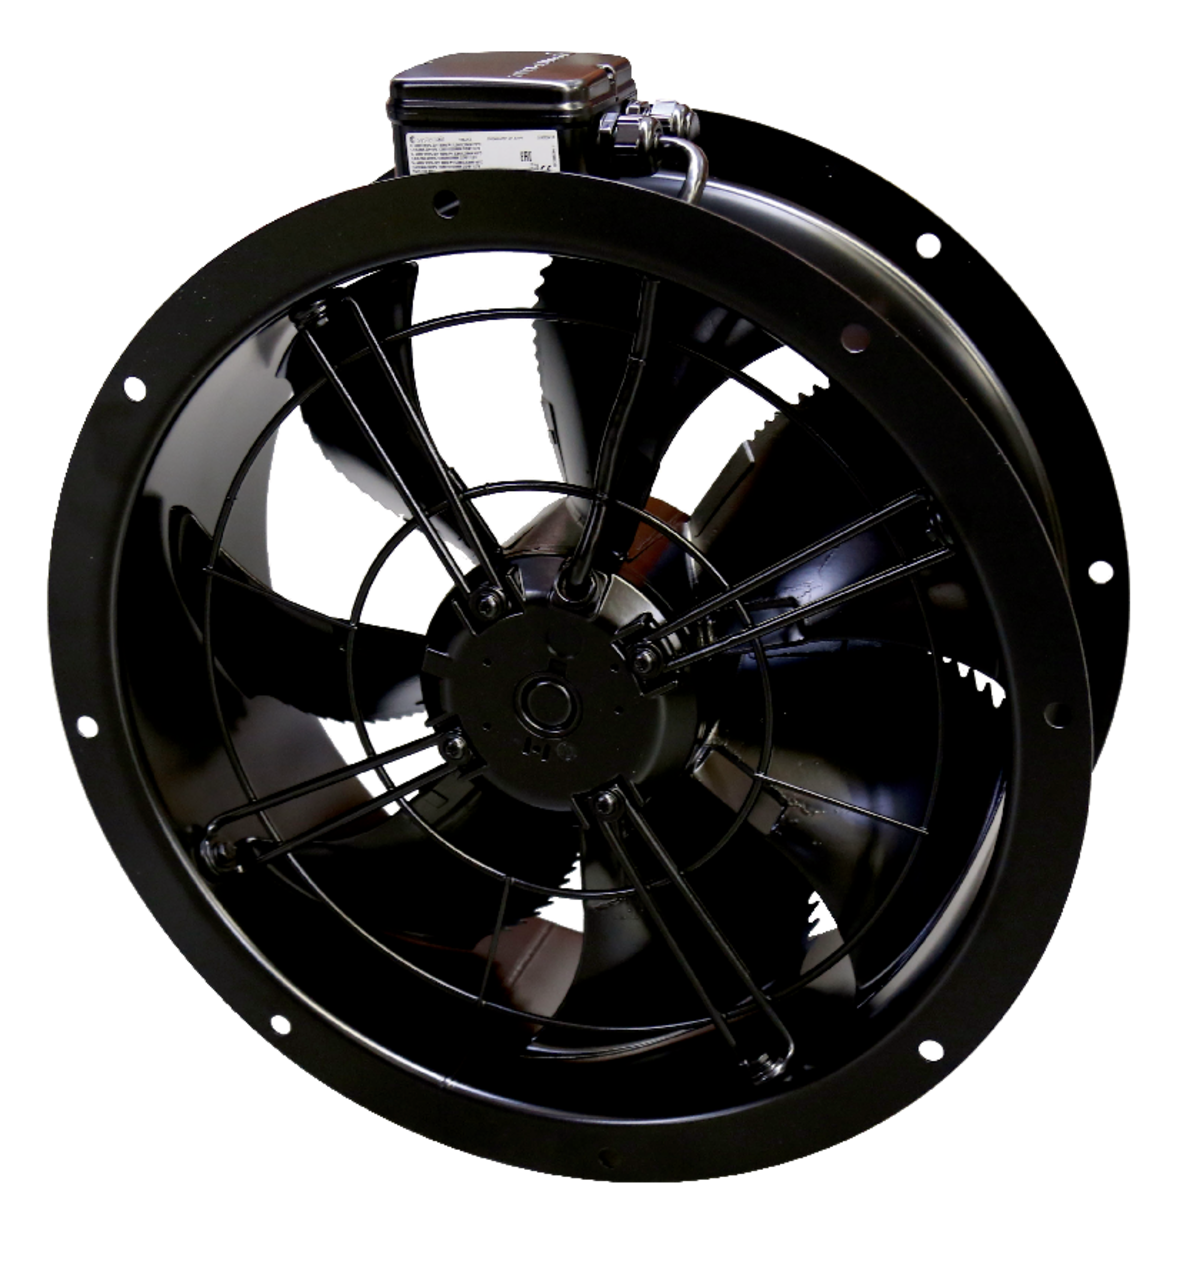 AR - Ašiniai ventiliatoriai - Ventiliatoriai - Produktai - Systemair